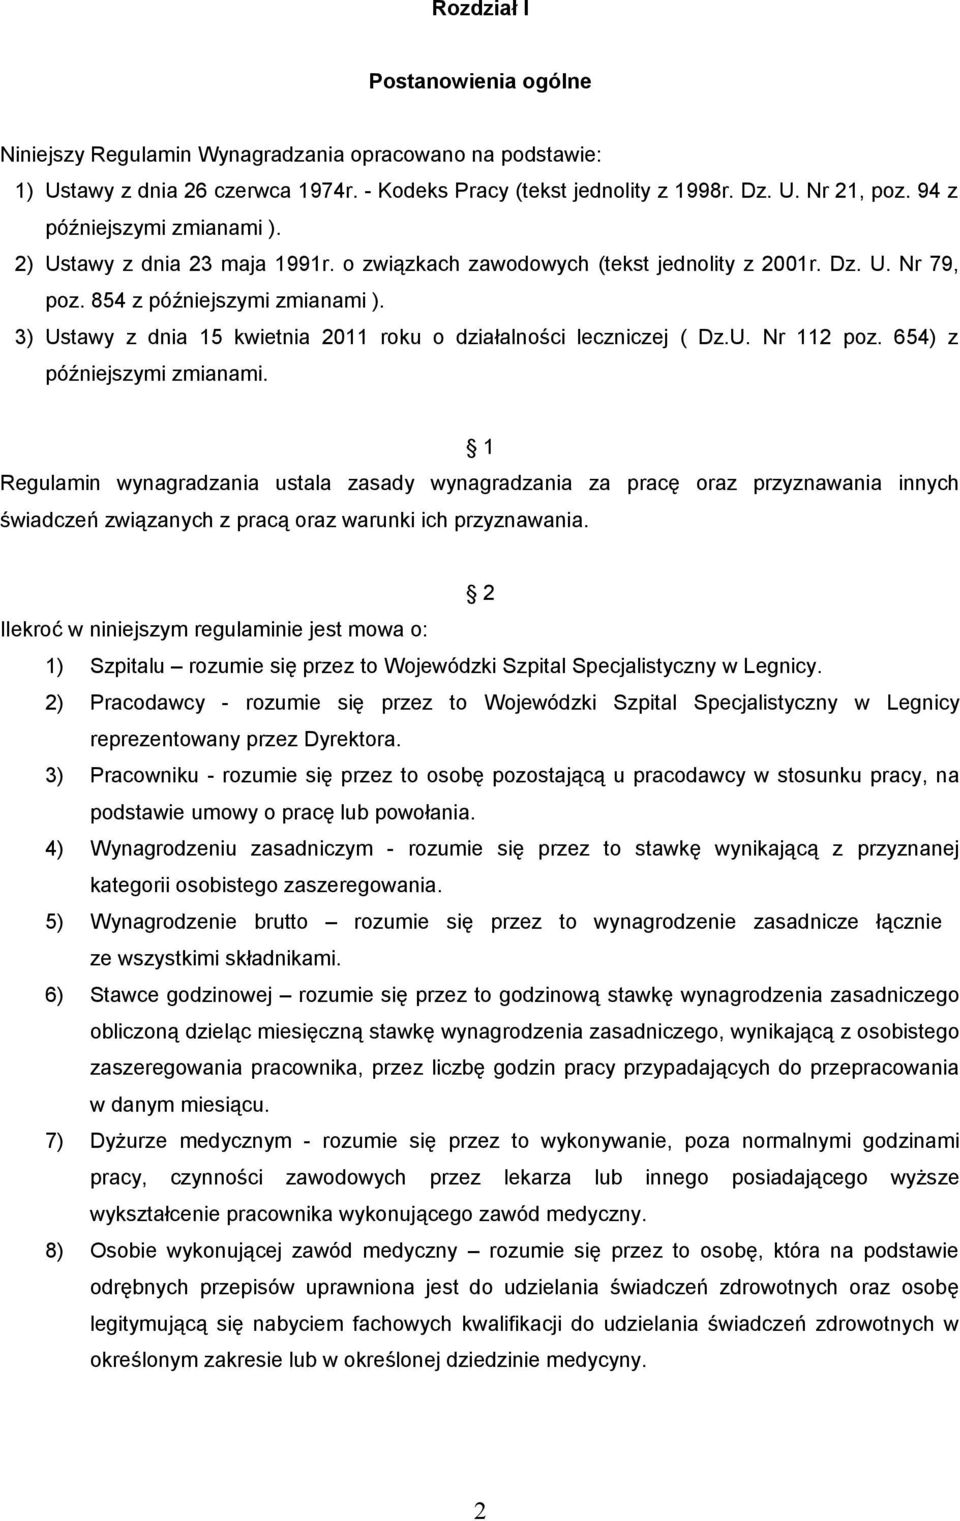 3) Ustawy z dnia 15 kwietnia 2011 roku o działalności leczniczej ( Dz.U. Nr 112 poz. 654) z późniejszymi zmianami.